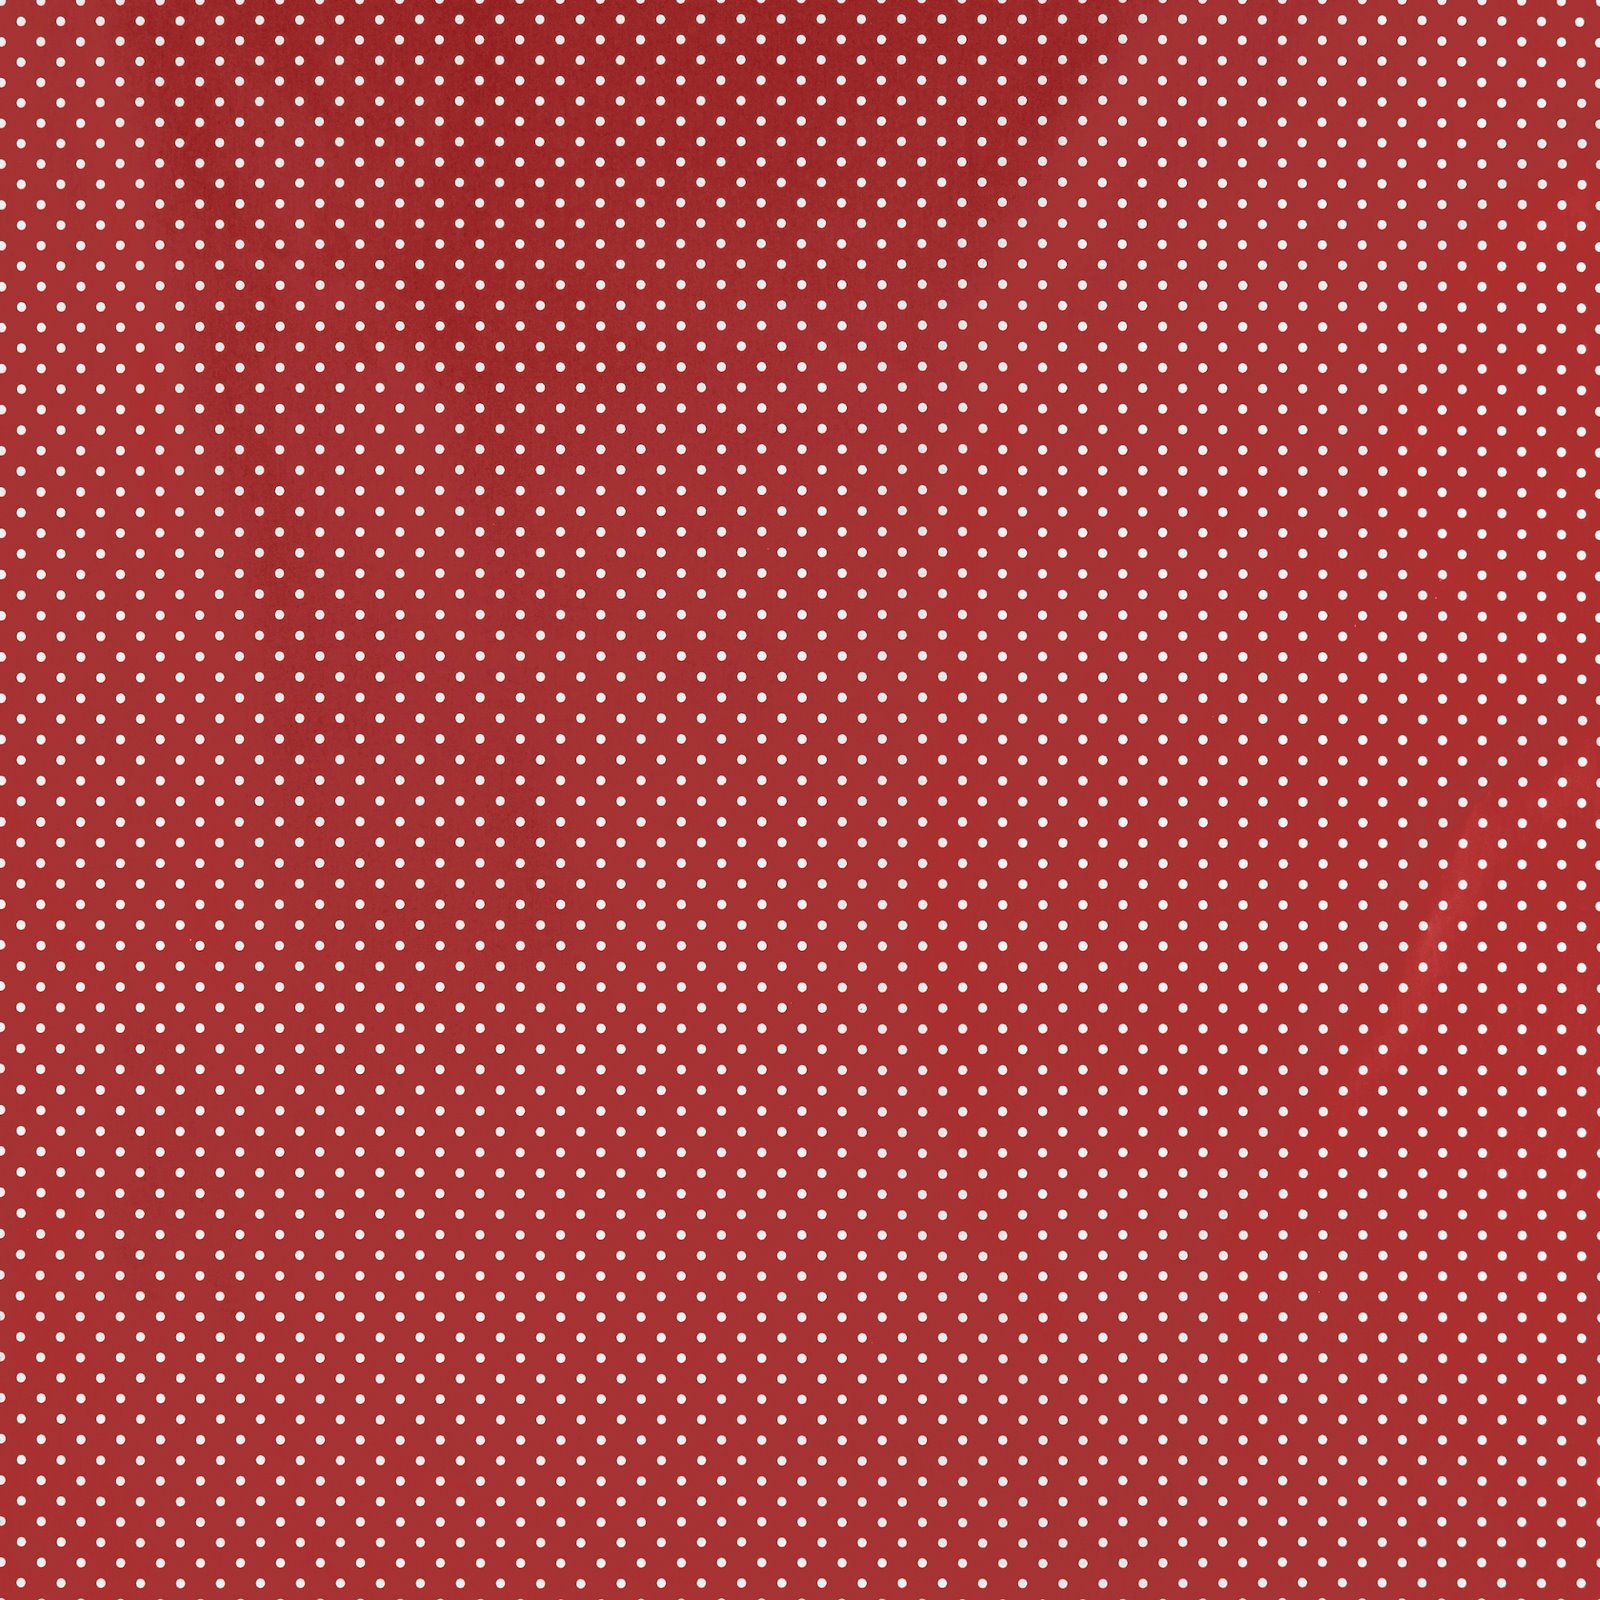 Tekstilvoksdug rød m hvide prikker 860161_pack_sp